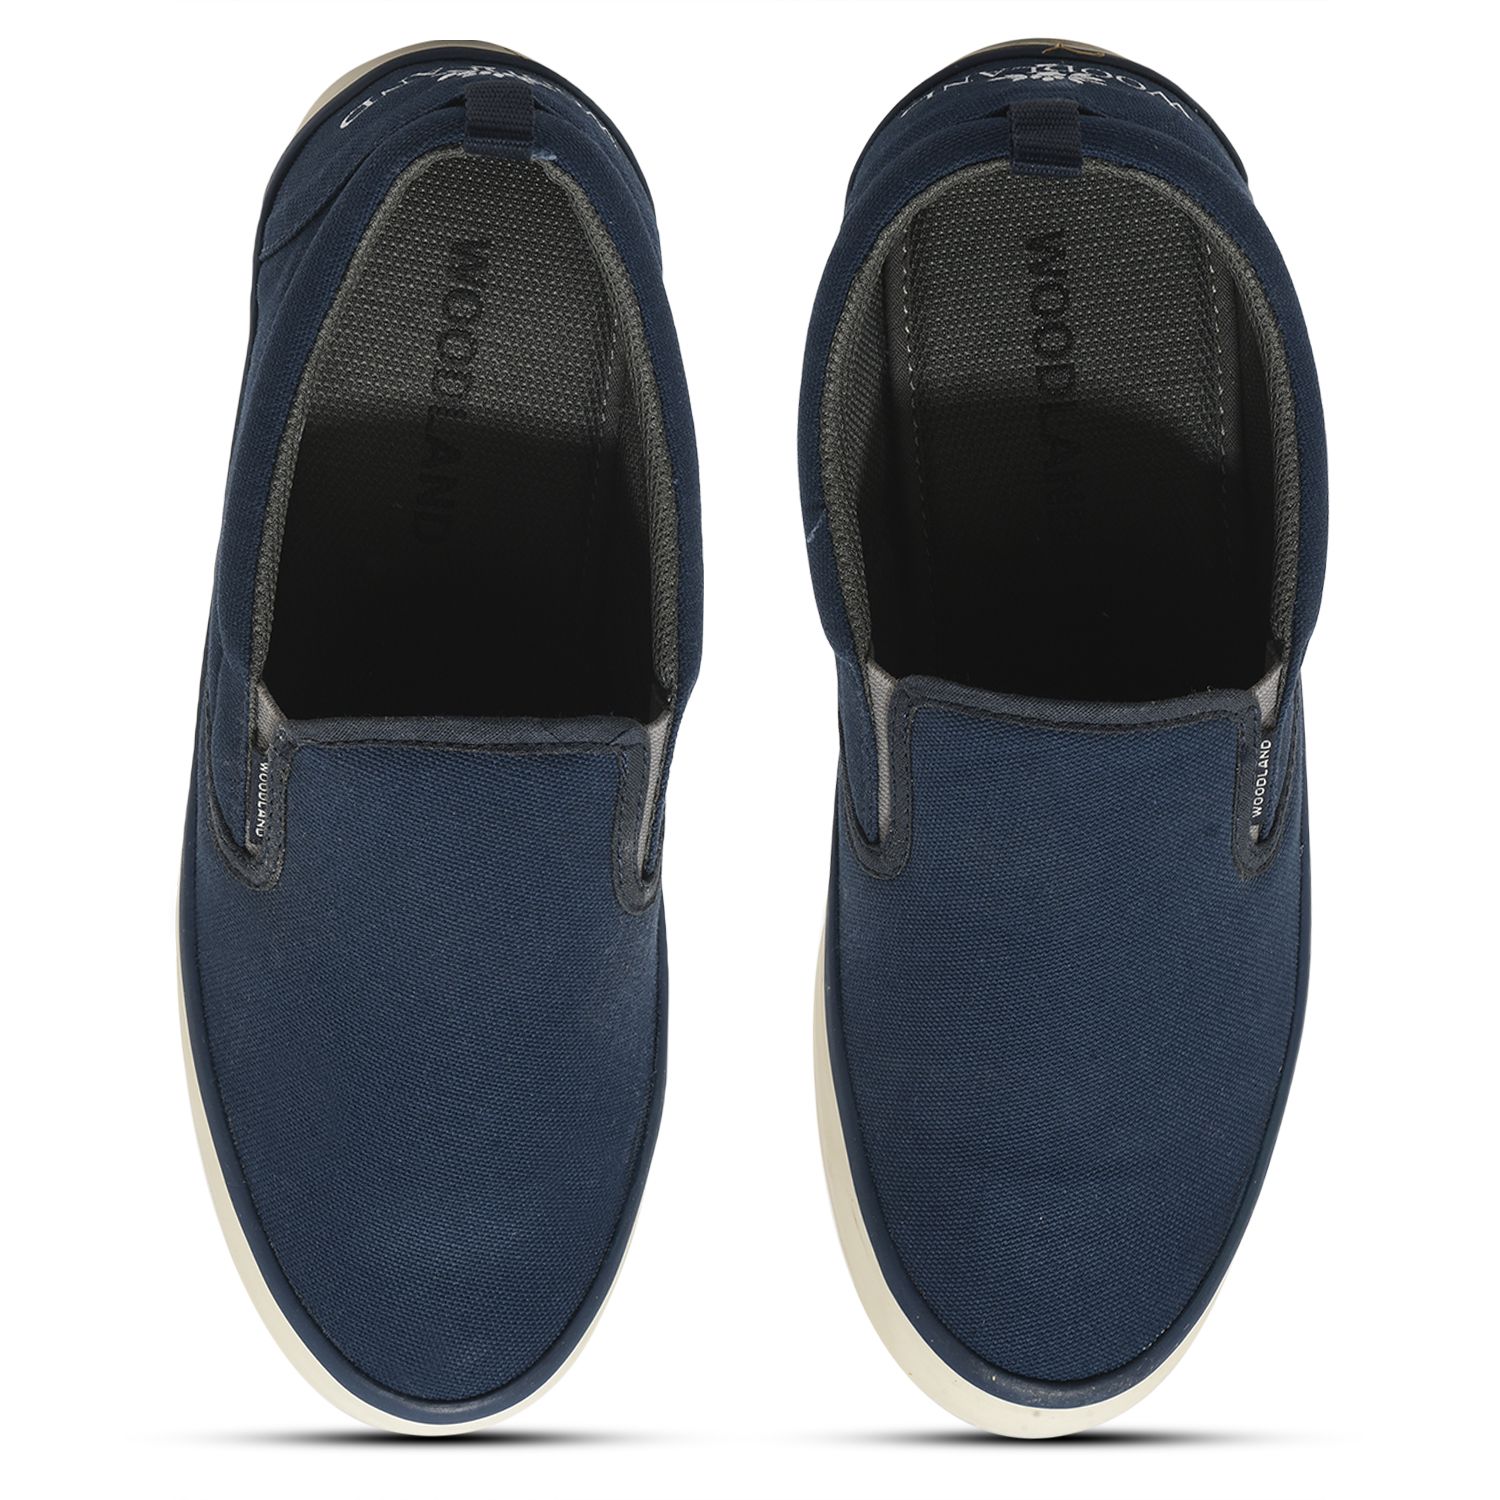 Navy Canvas Slip-on Shoe for Men